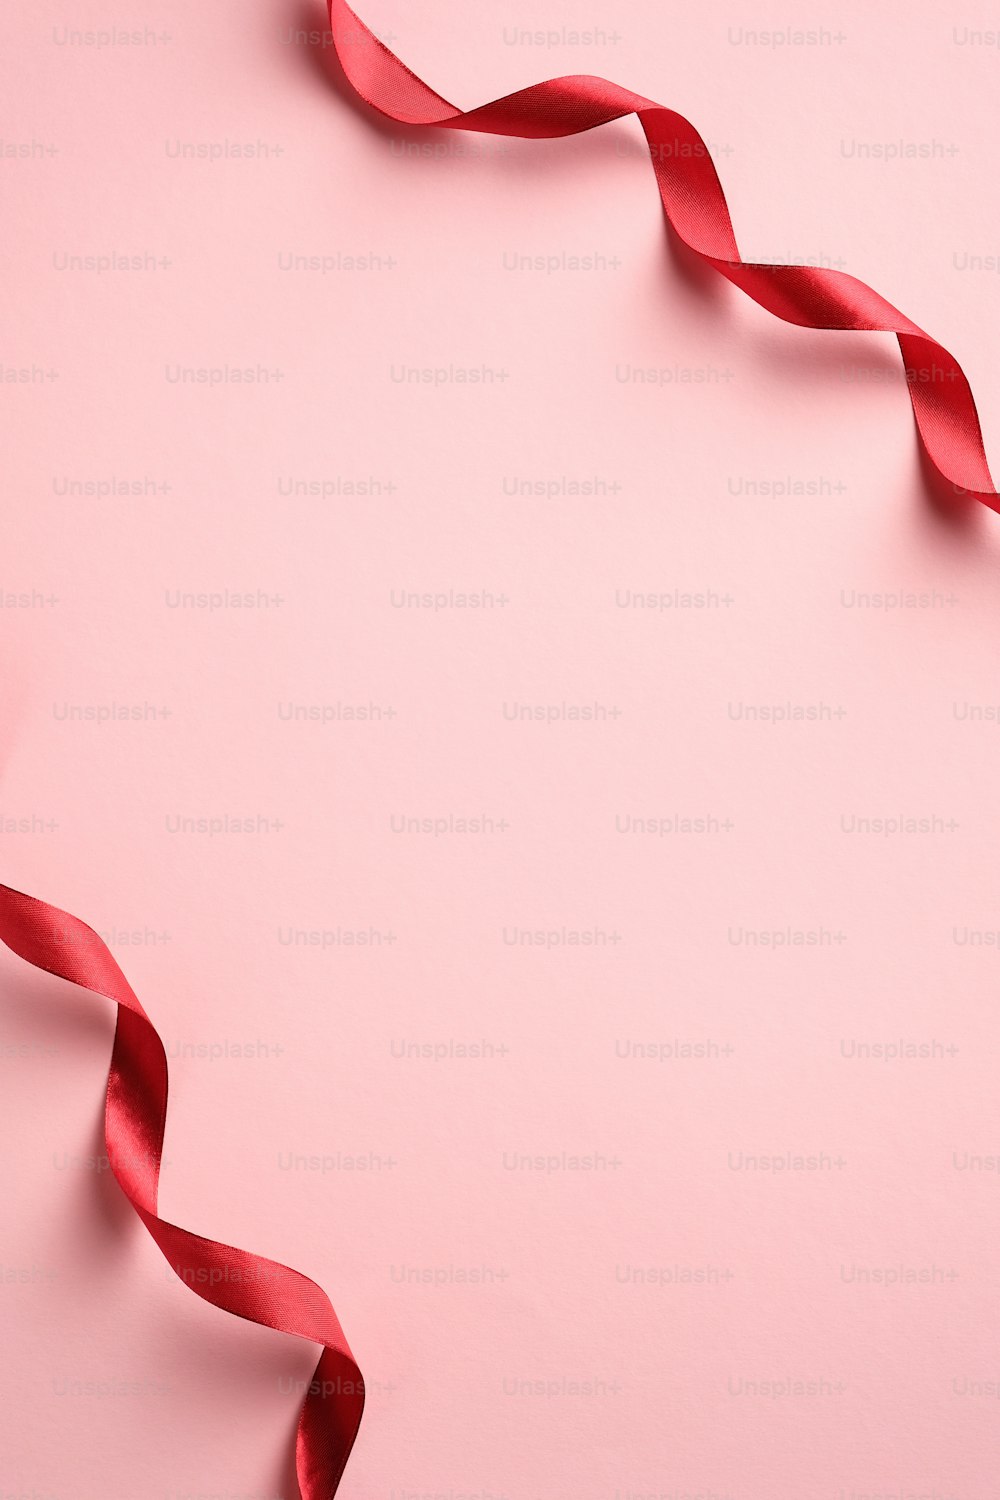 Valentinstag, Geburtstag, Muttertag vertikale Bannervorlage mit rotem Band auf rosa Hintergrund. Minimalistischer Stil. Flache Lage, Draufsicht.